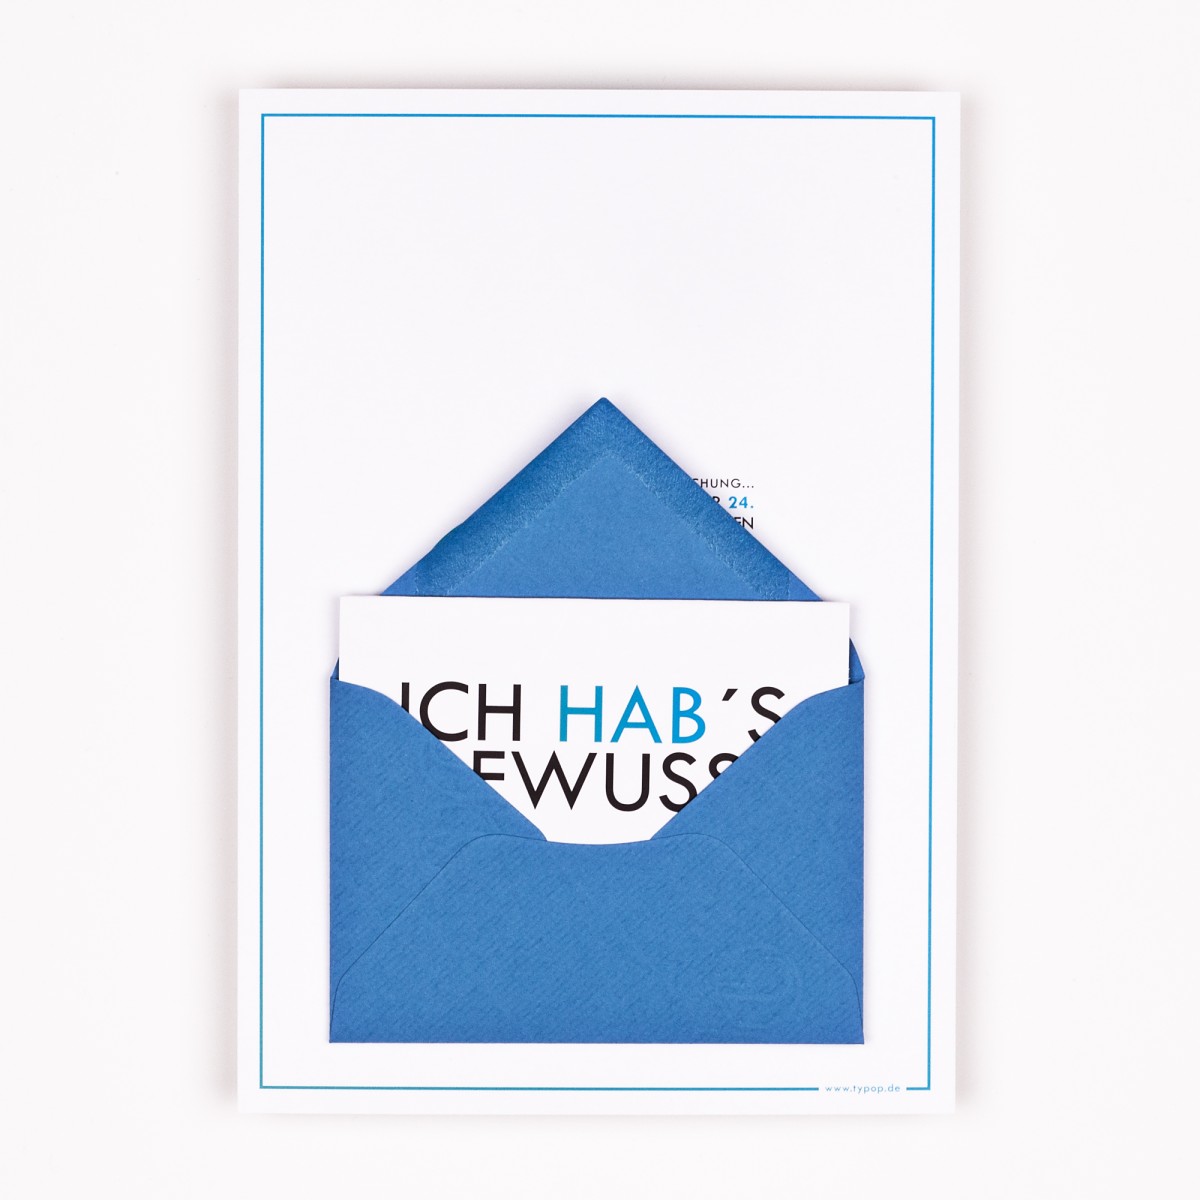 Adventskalenderkarte "Schneeflocken" inkl. Umschlag, Minikarte + Umschlag und Klebepunkte